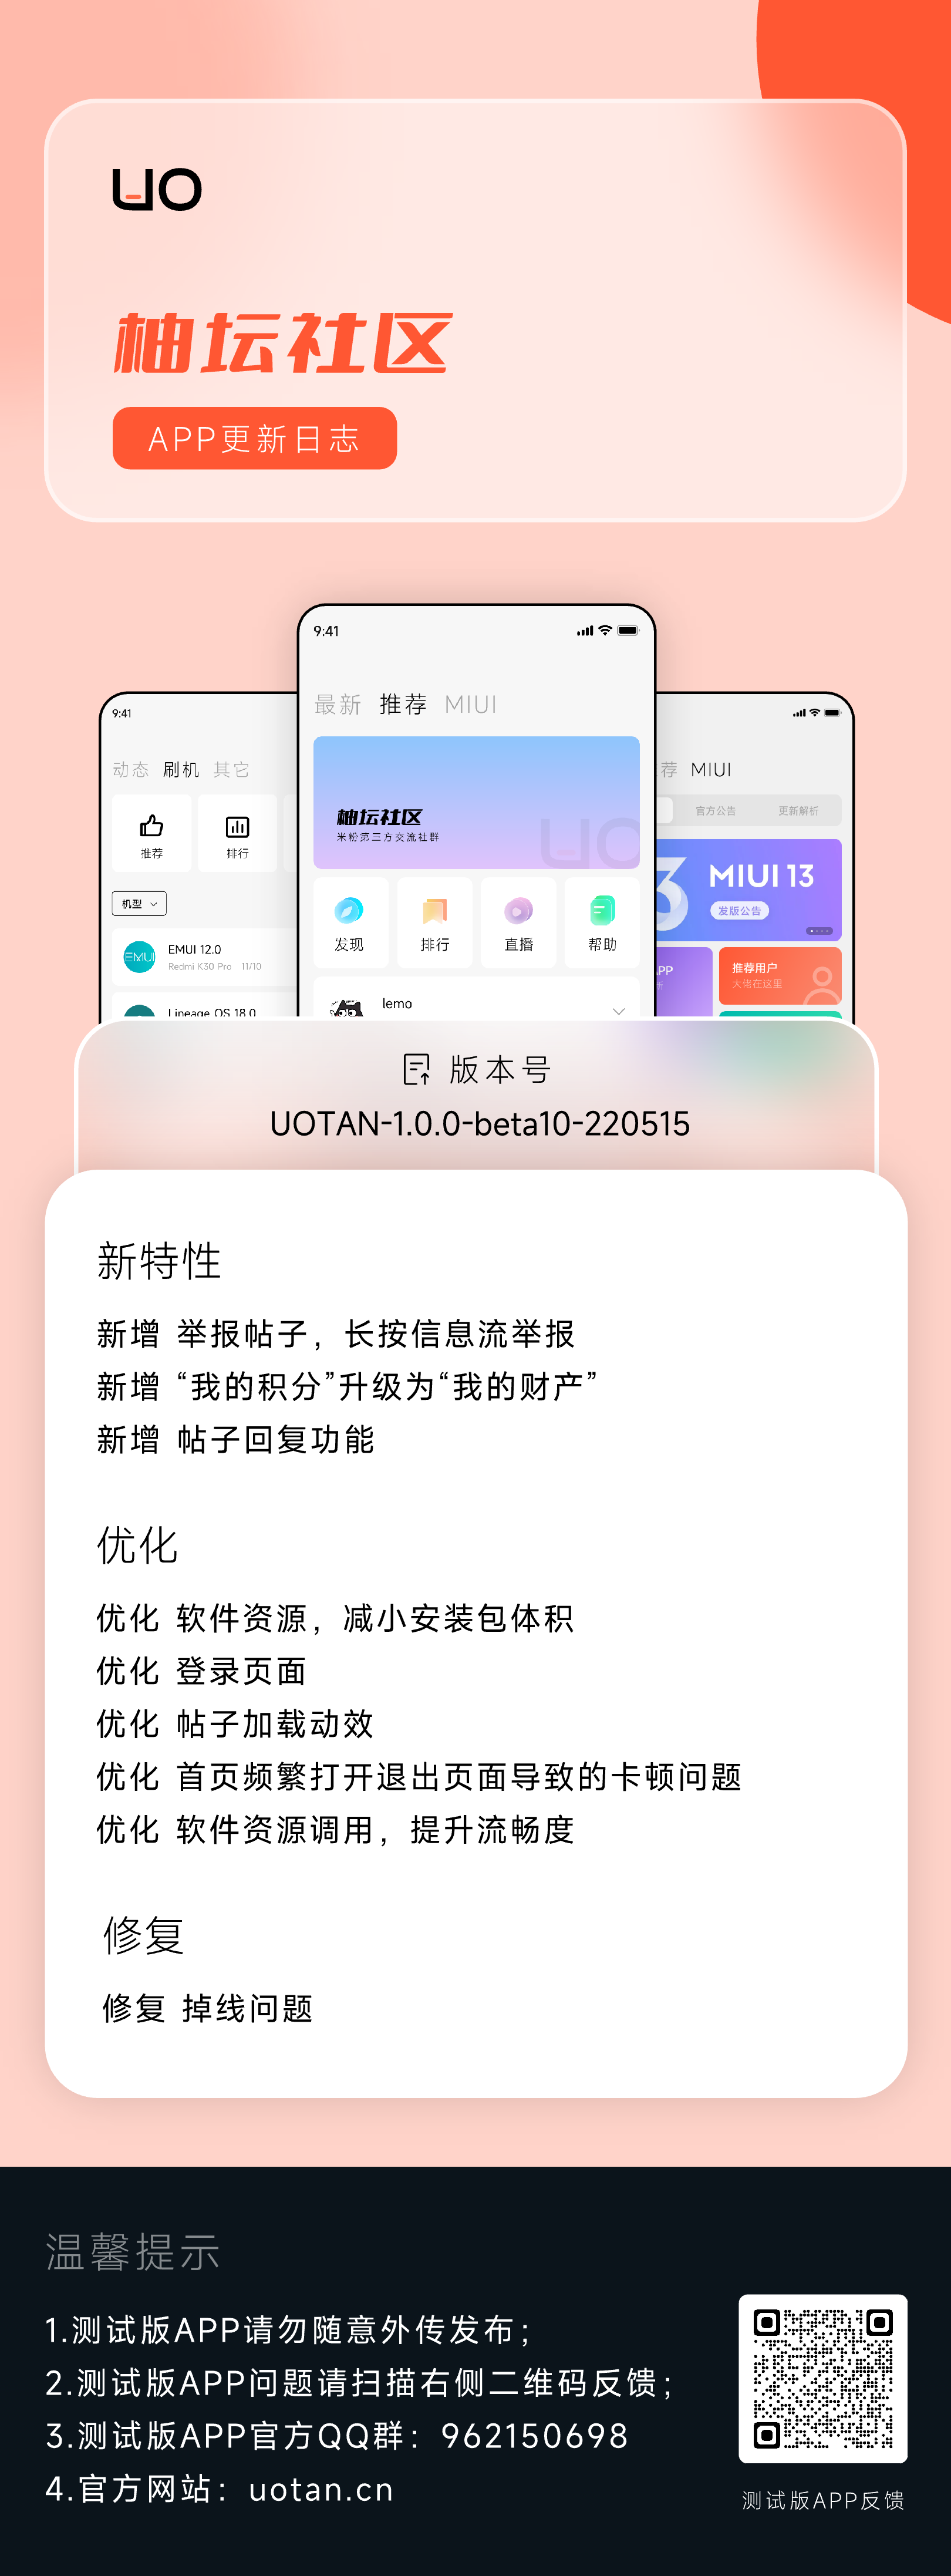 APP更新日志UOTAN-1.0.0-beta10-220515.png